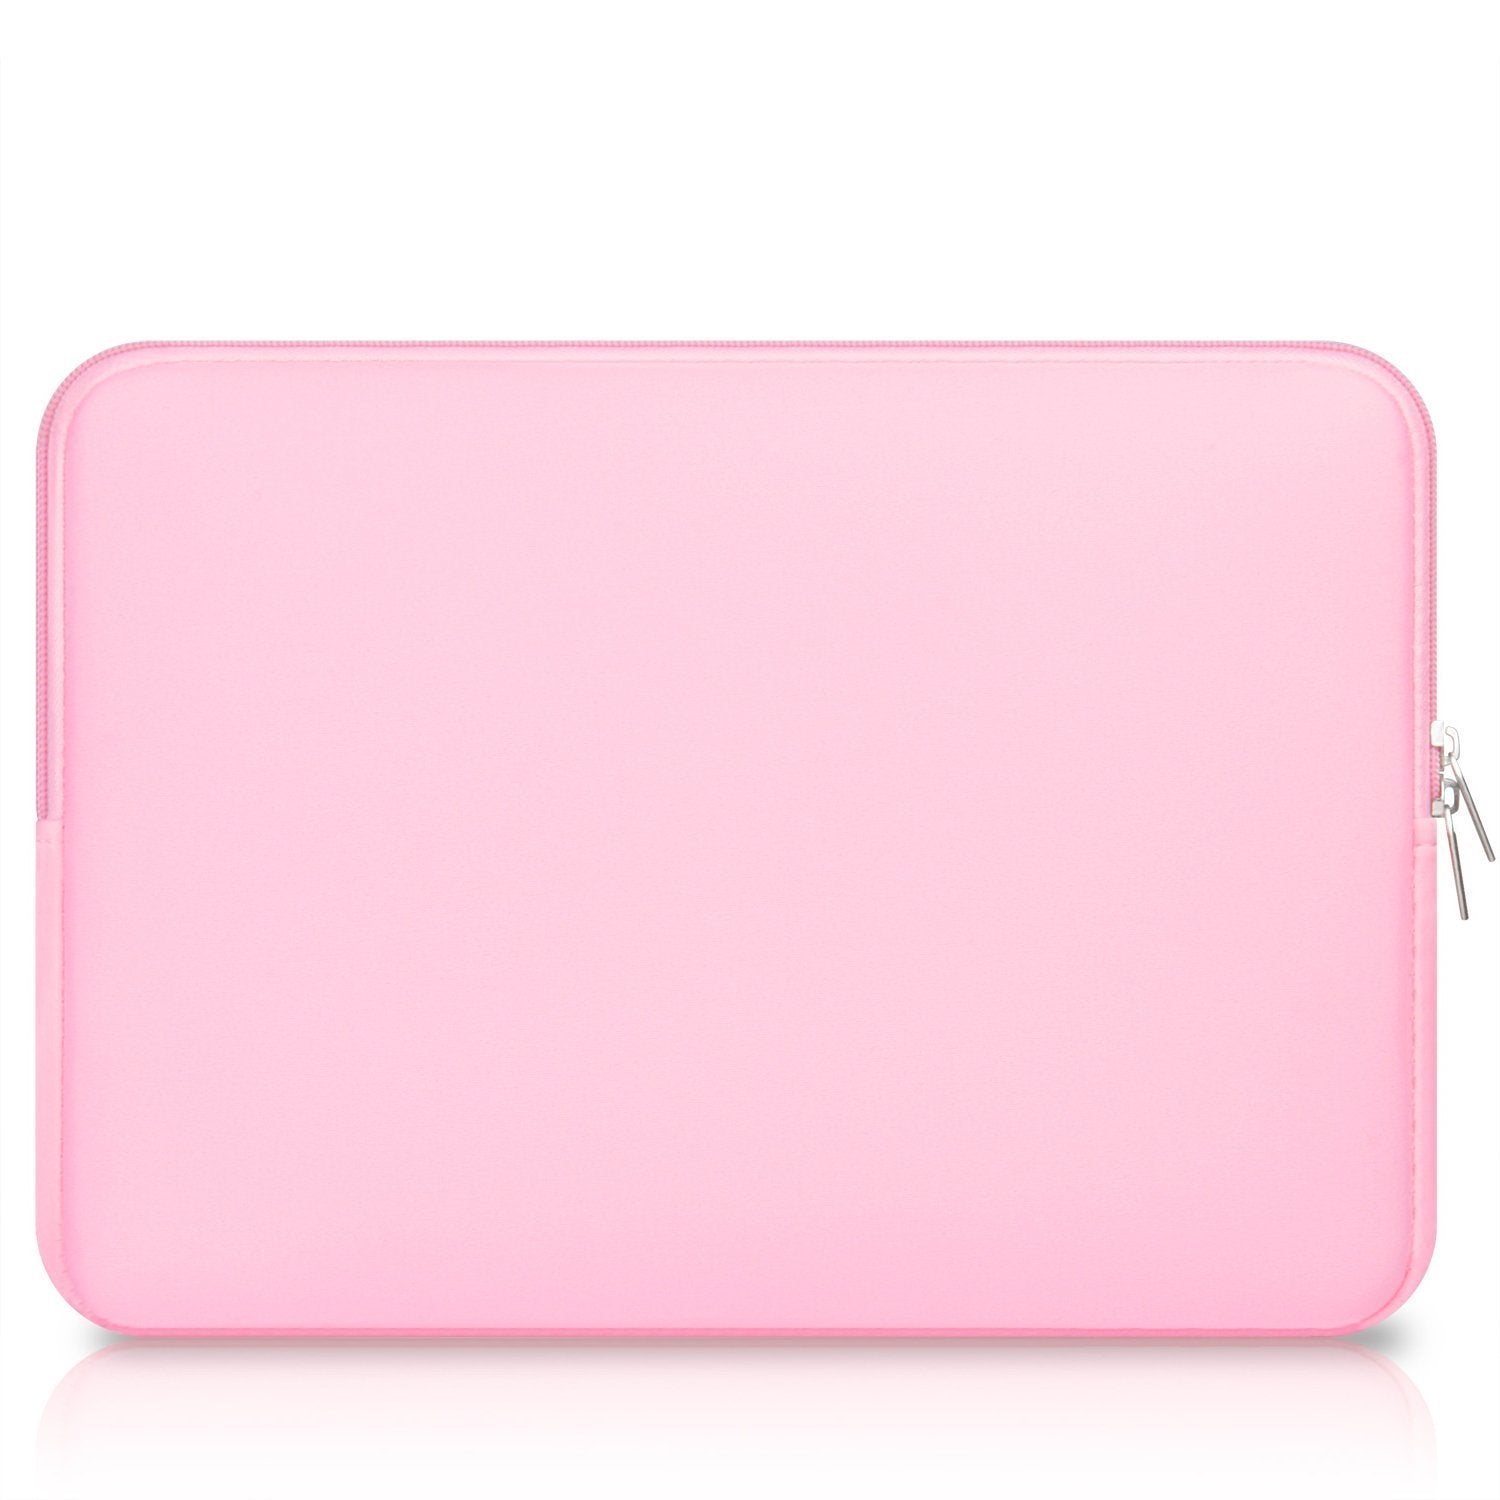 MacBook Case Set - Protective Peony Blush Marble - colourbanana